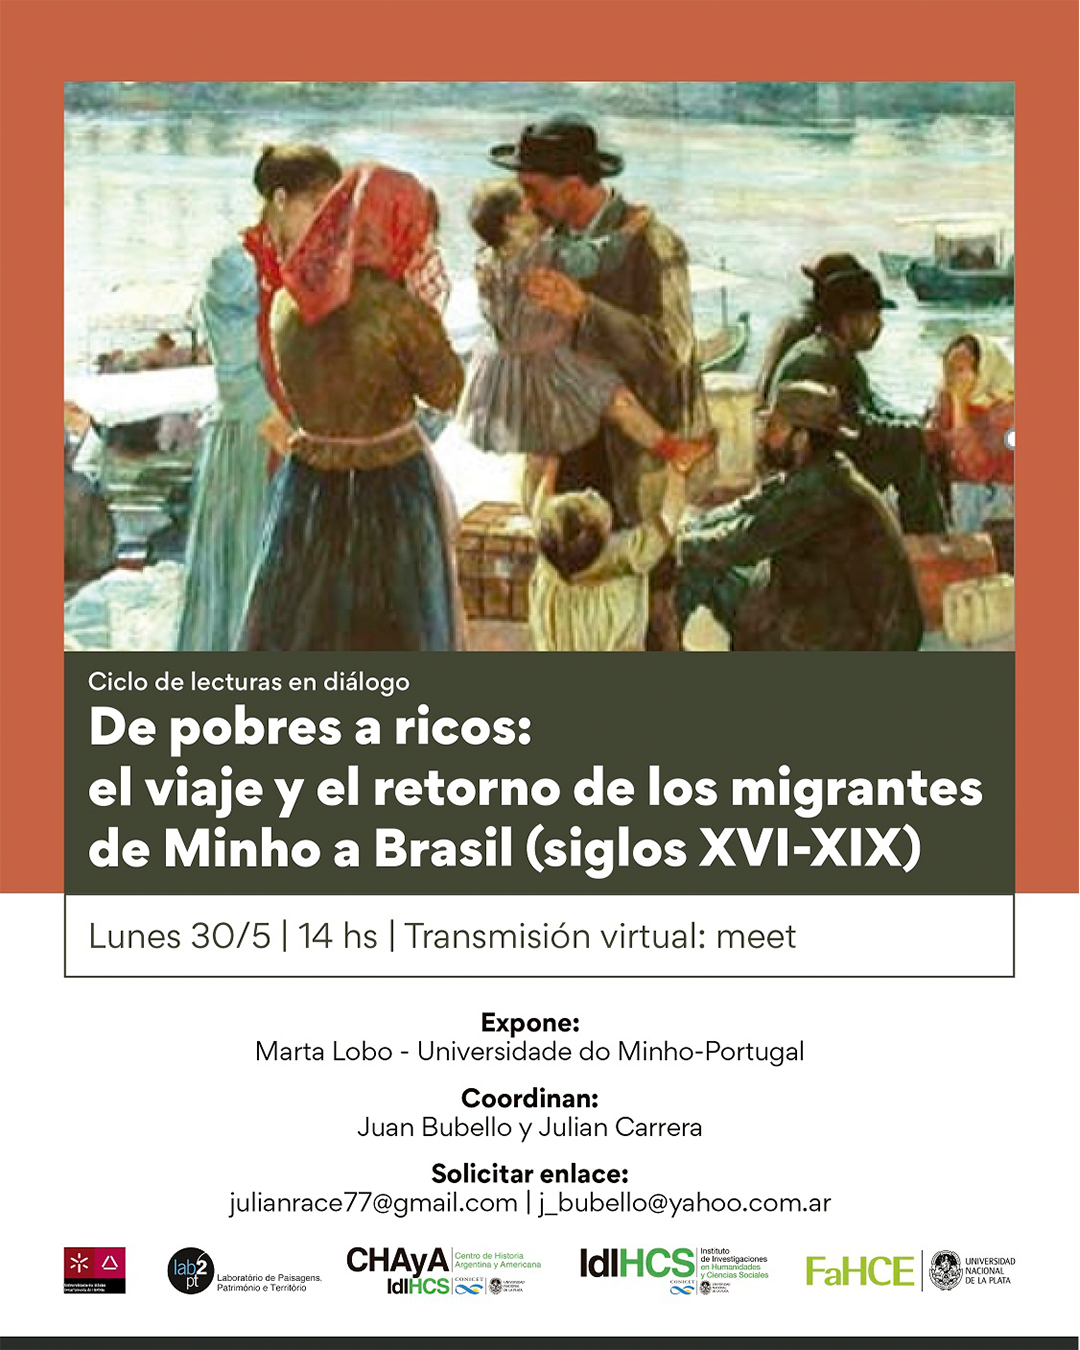 Ciclo de lecturas en diálogo "De pobres a ricos: el viaje y el retorno do los migrantes de Minho a Brasil (siglos XVI-XIX)" image